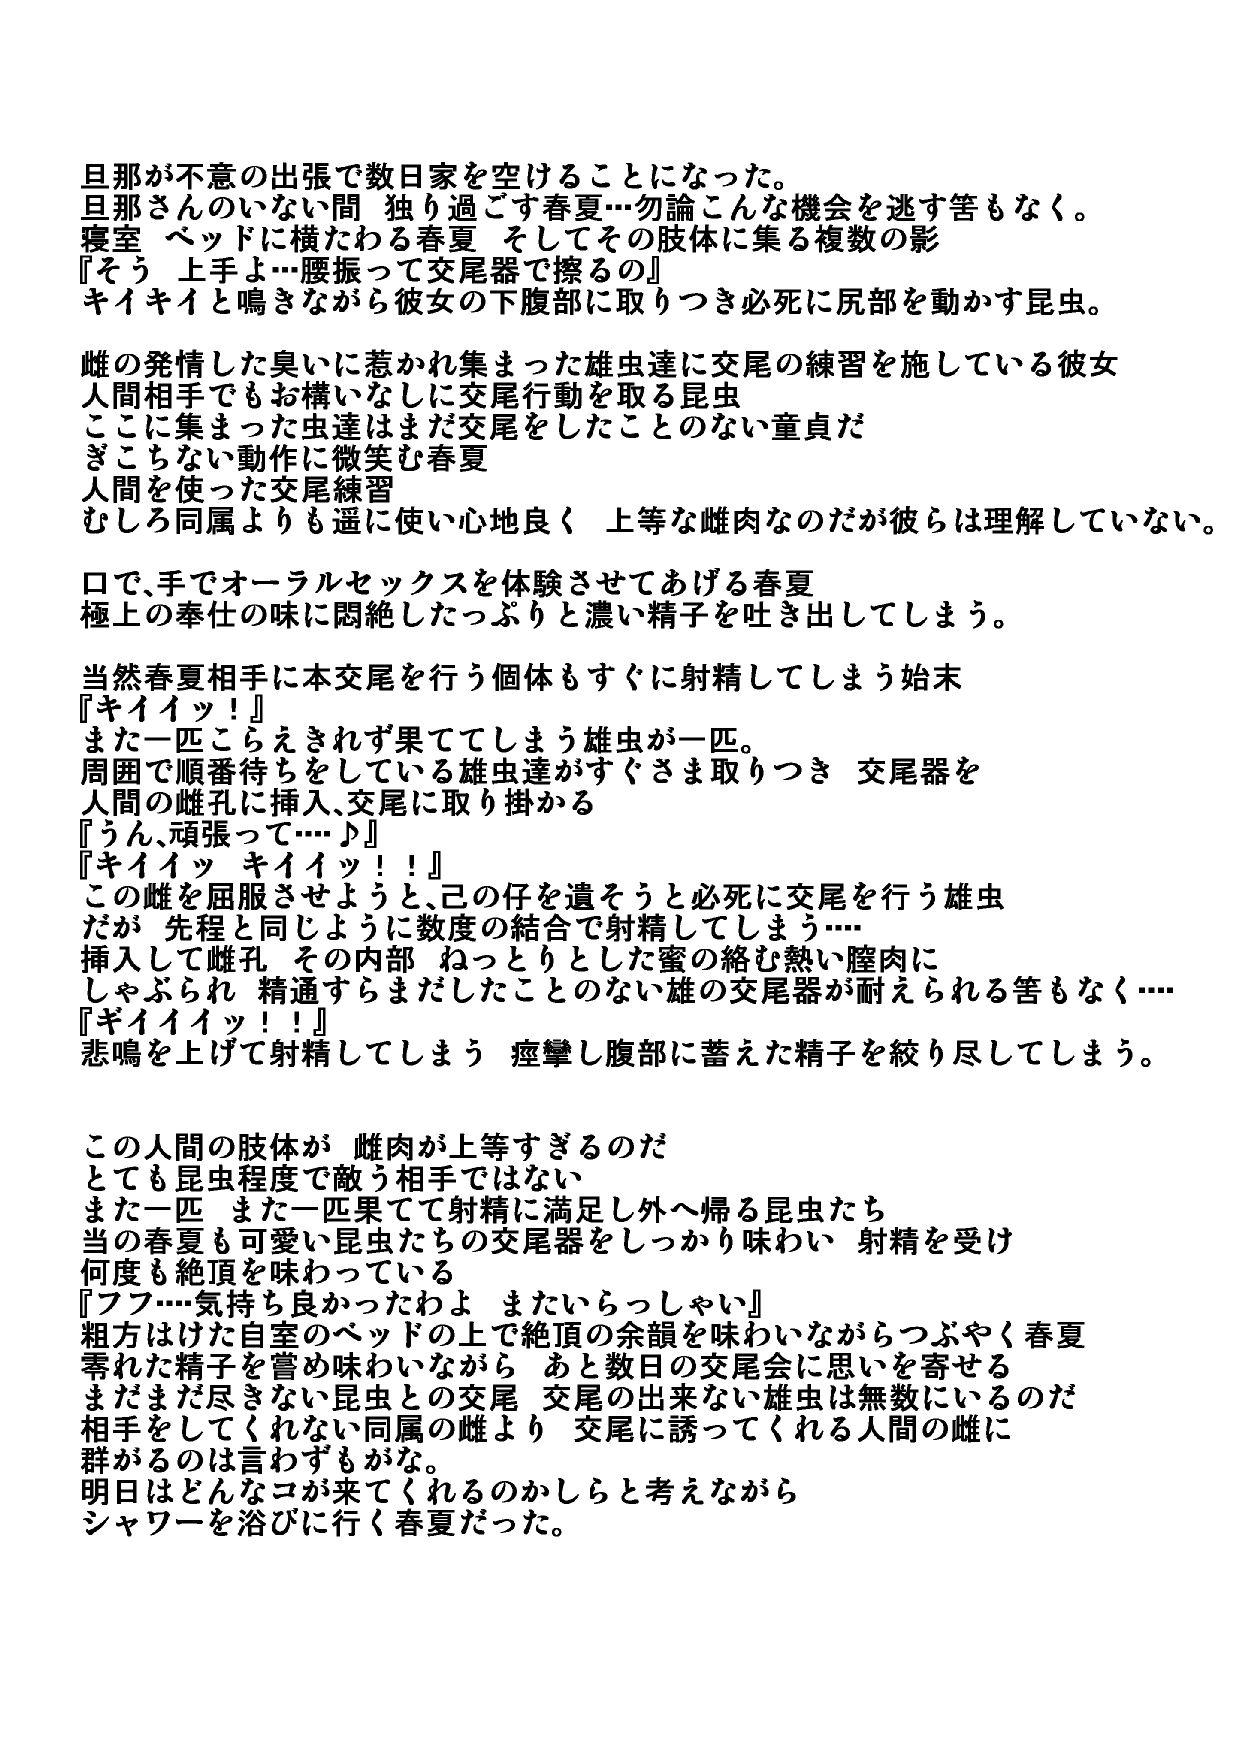 Classy Harukamushikan3 - Toheart2 Girlsfucking - Page 13